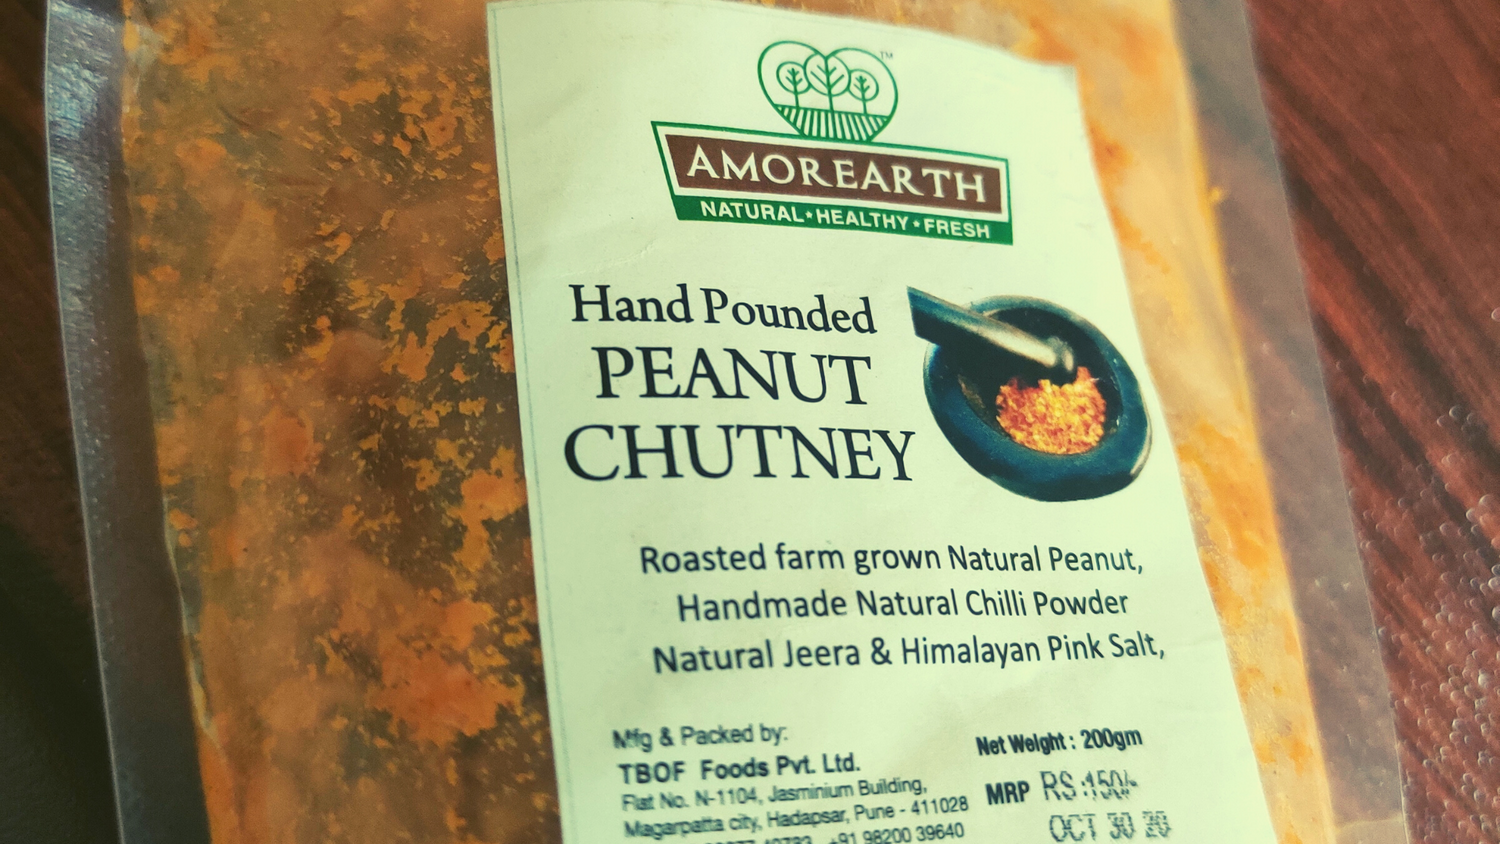 5 Ideas To Use The TBOF Farmer Style Peanut Chutney!